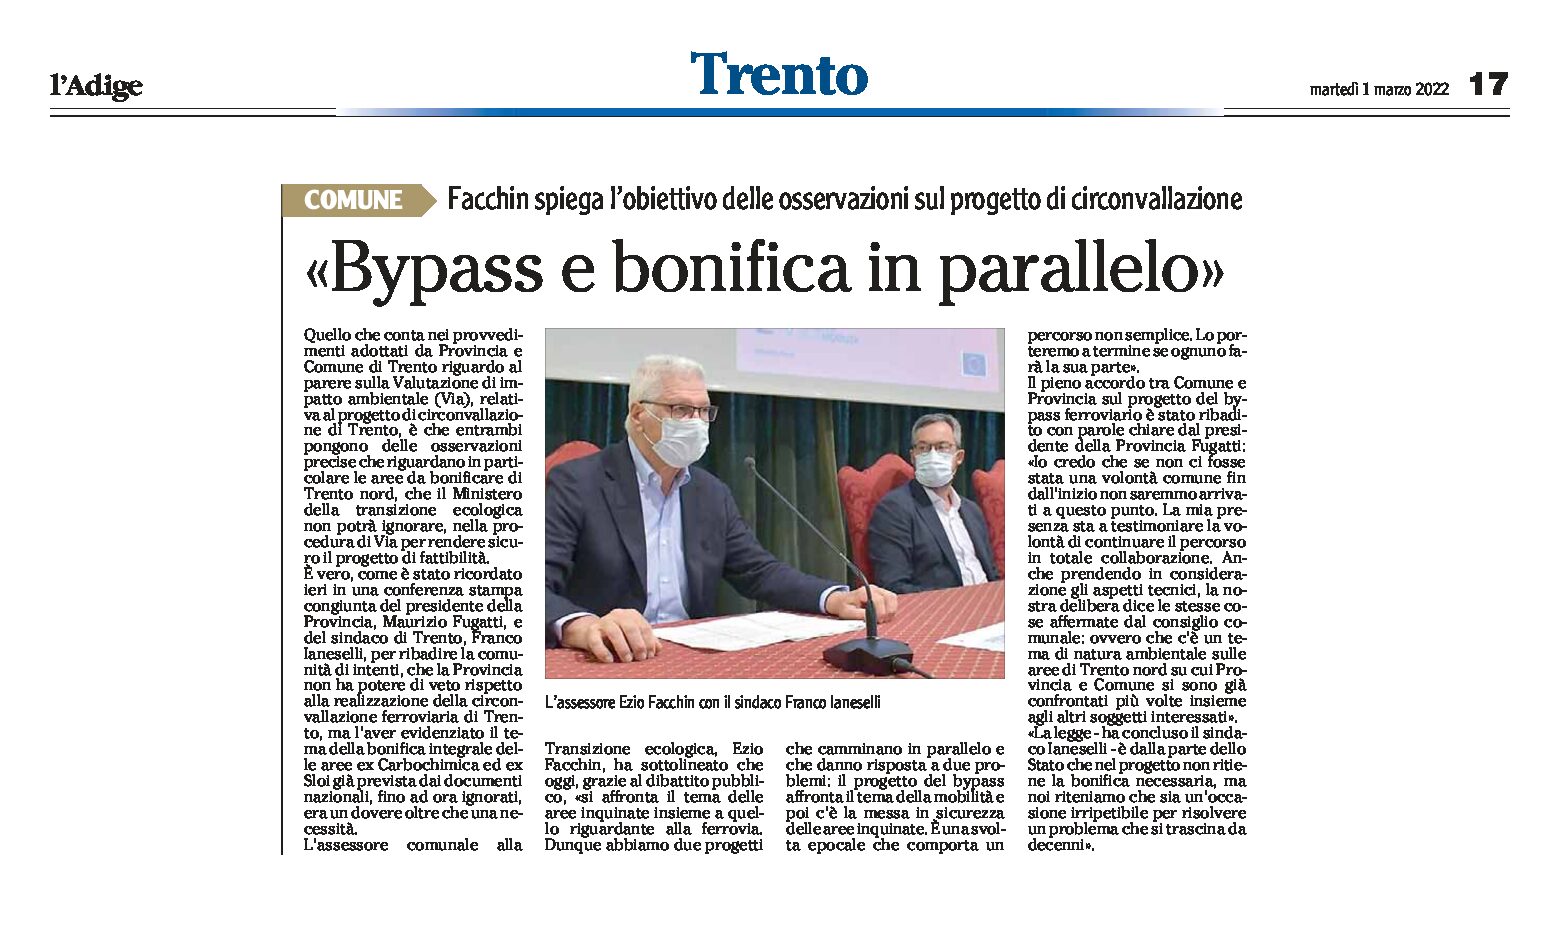 Trento: bypass e bonifica in parallelo